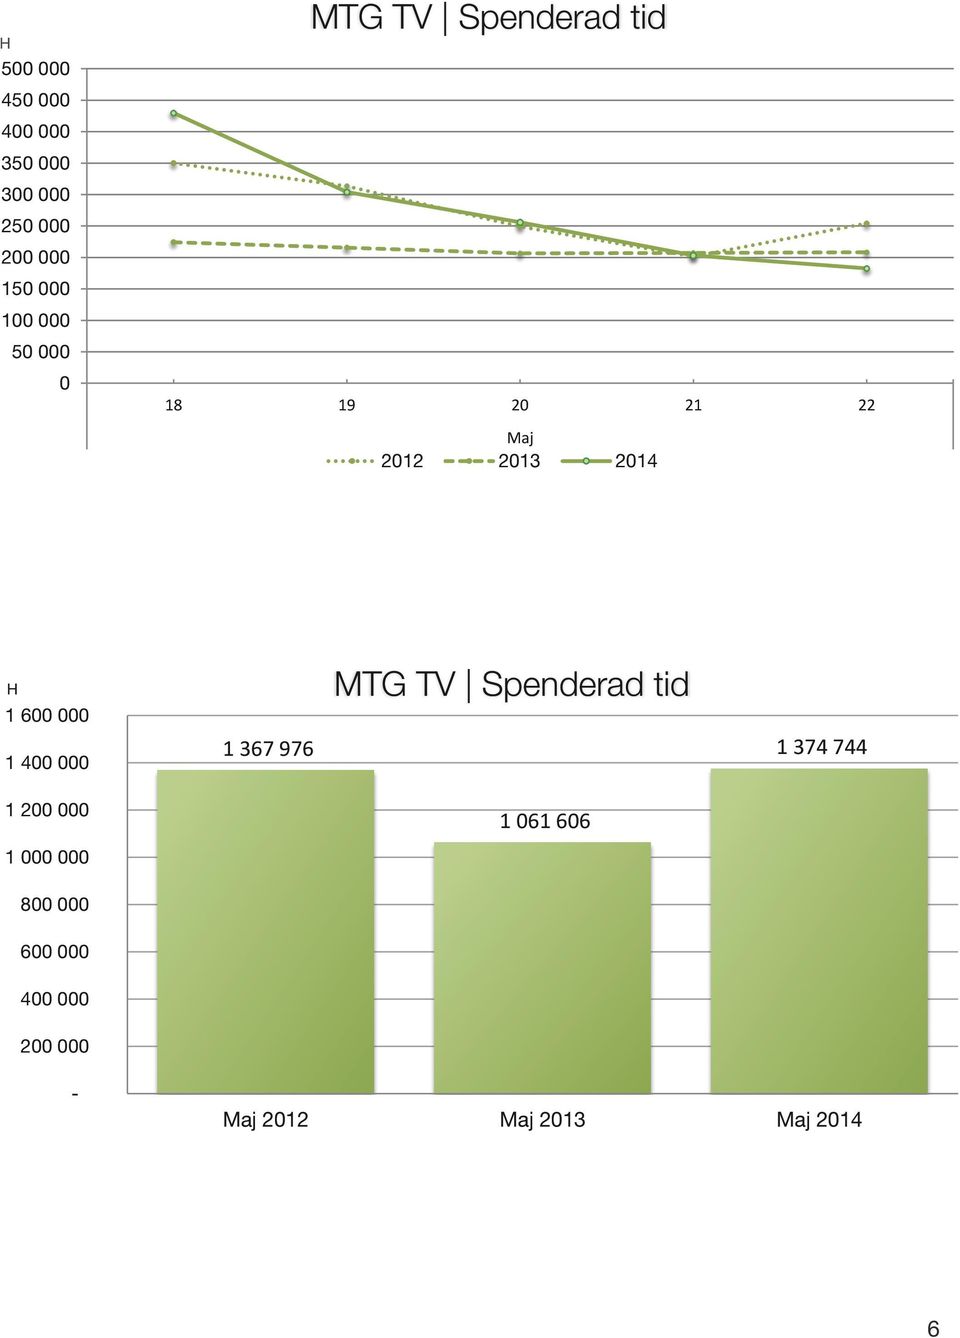 H 1 6 1 4 1 367 976 MTG TV Spenderad